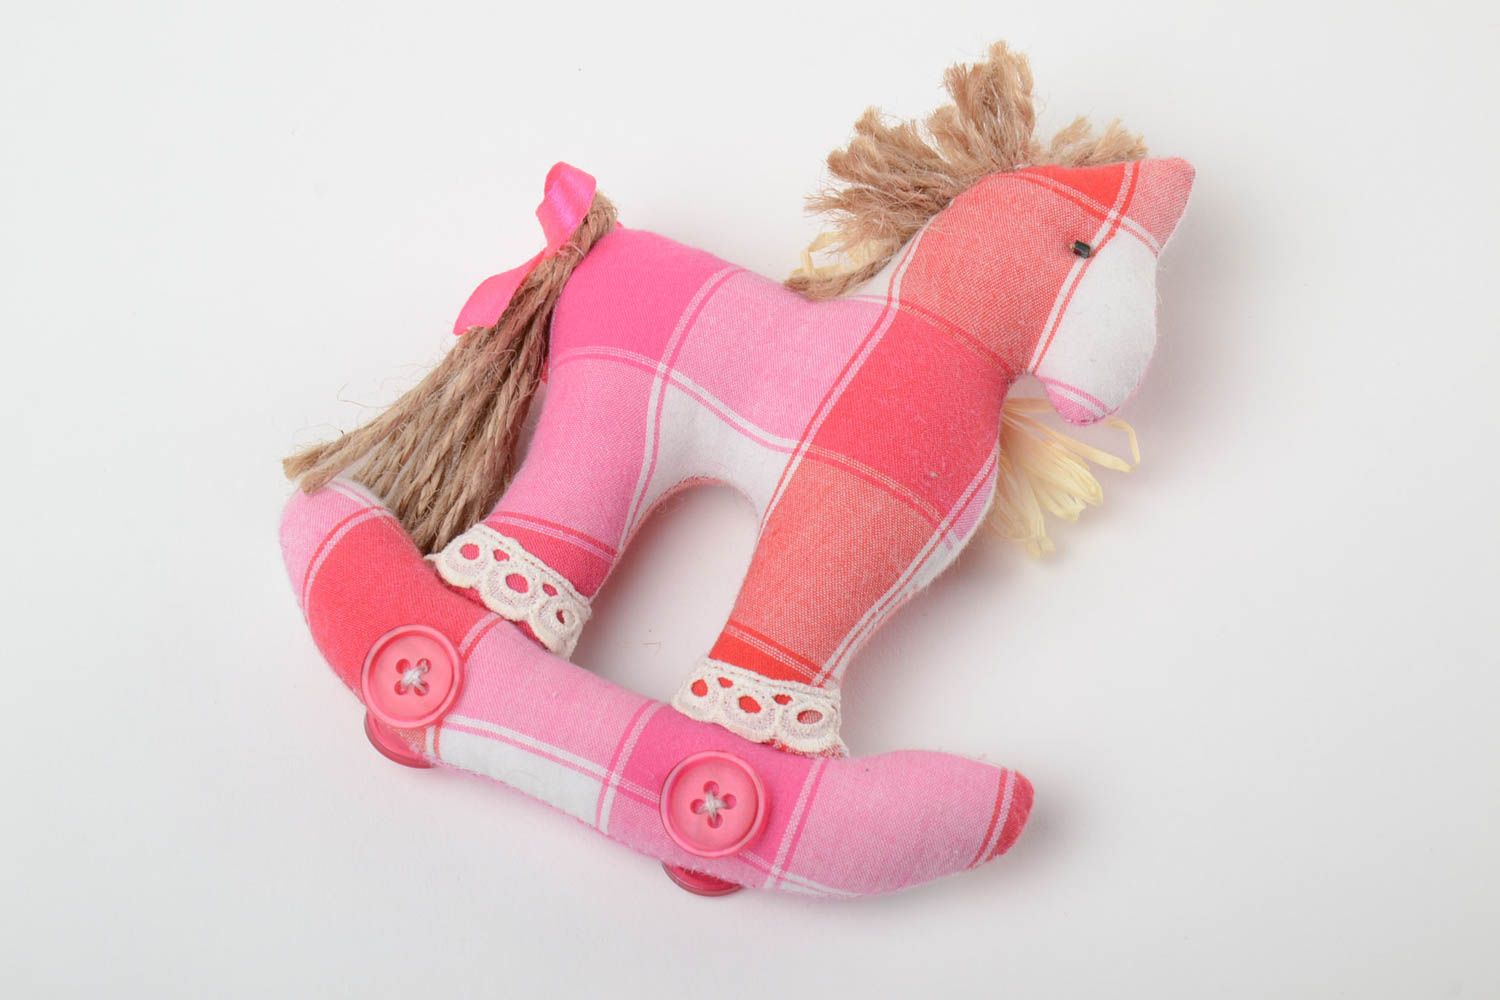 Мягкая игрушка из ткани ручной работы лошадка авторская розовая красивая фото 2